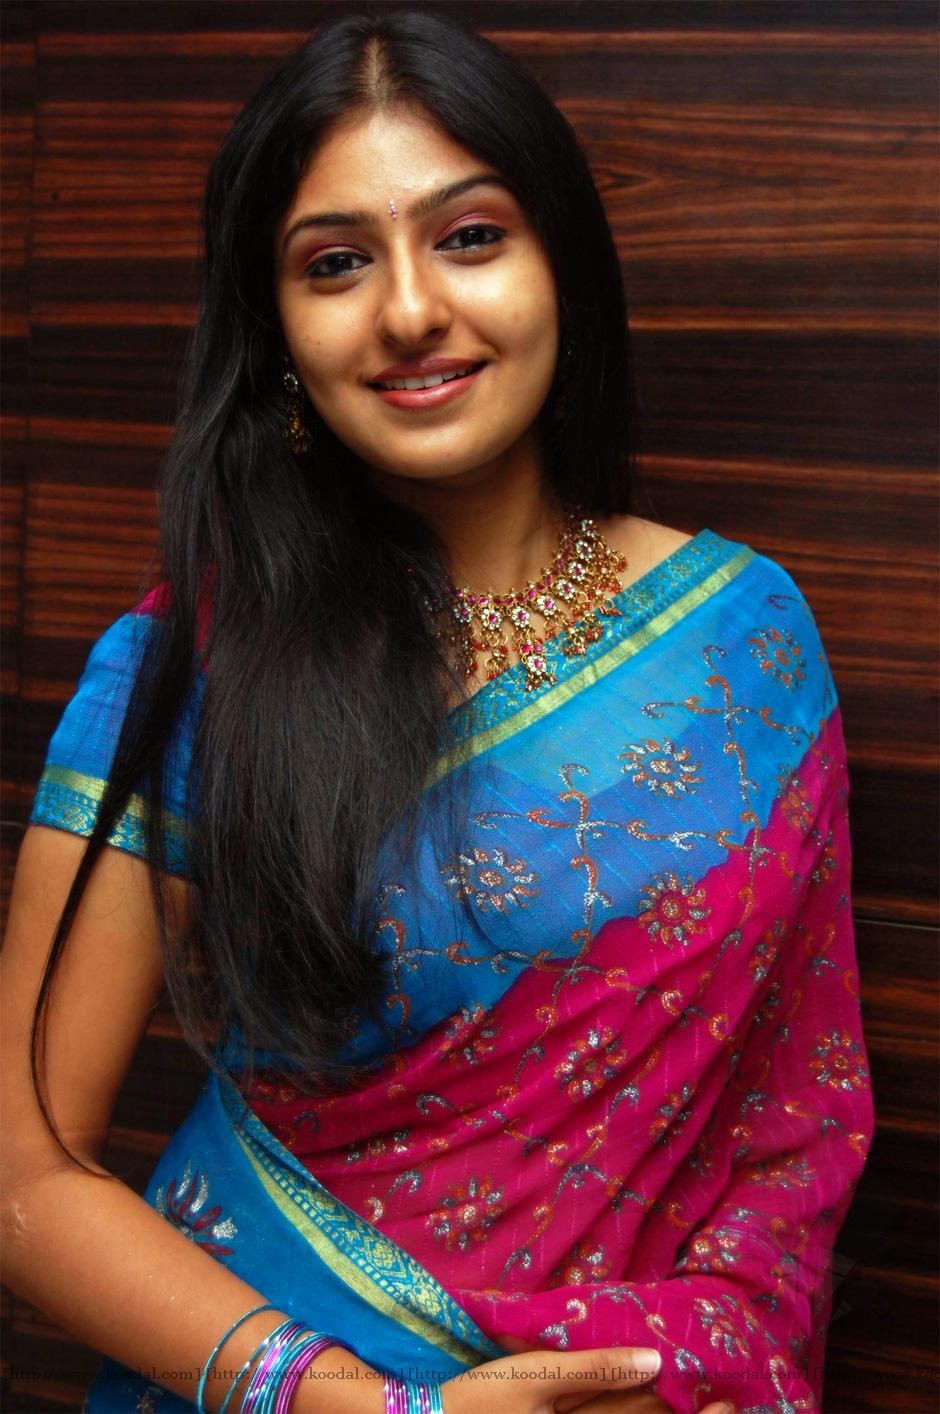 Movie Hub: Tamil Actress In Saree, Tamil Actress Hot In Saree, Photos